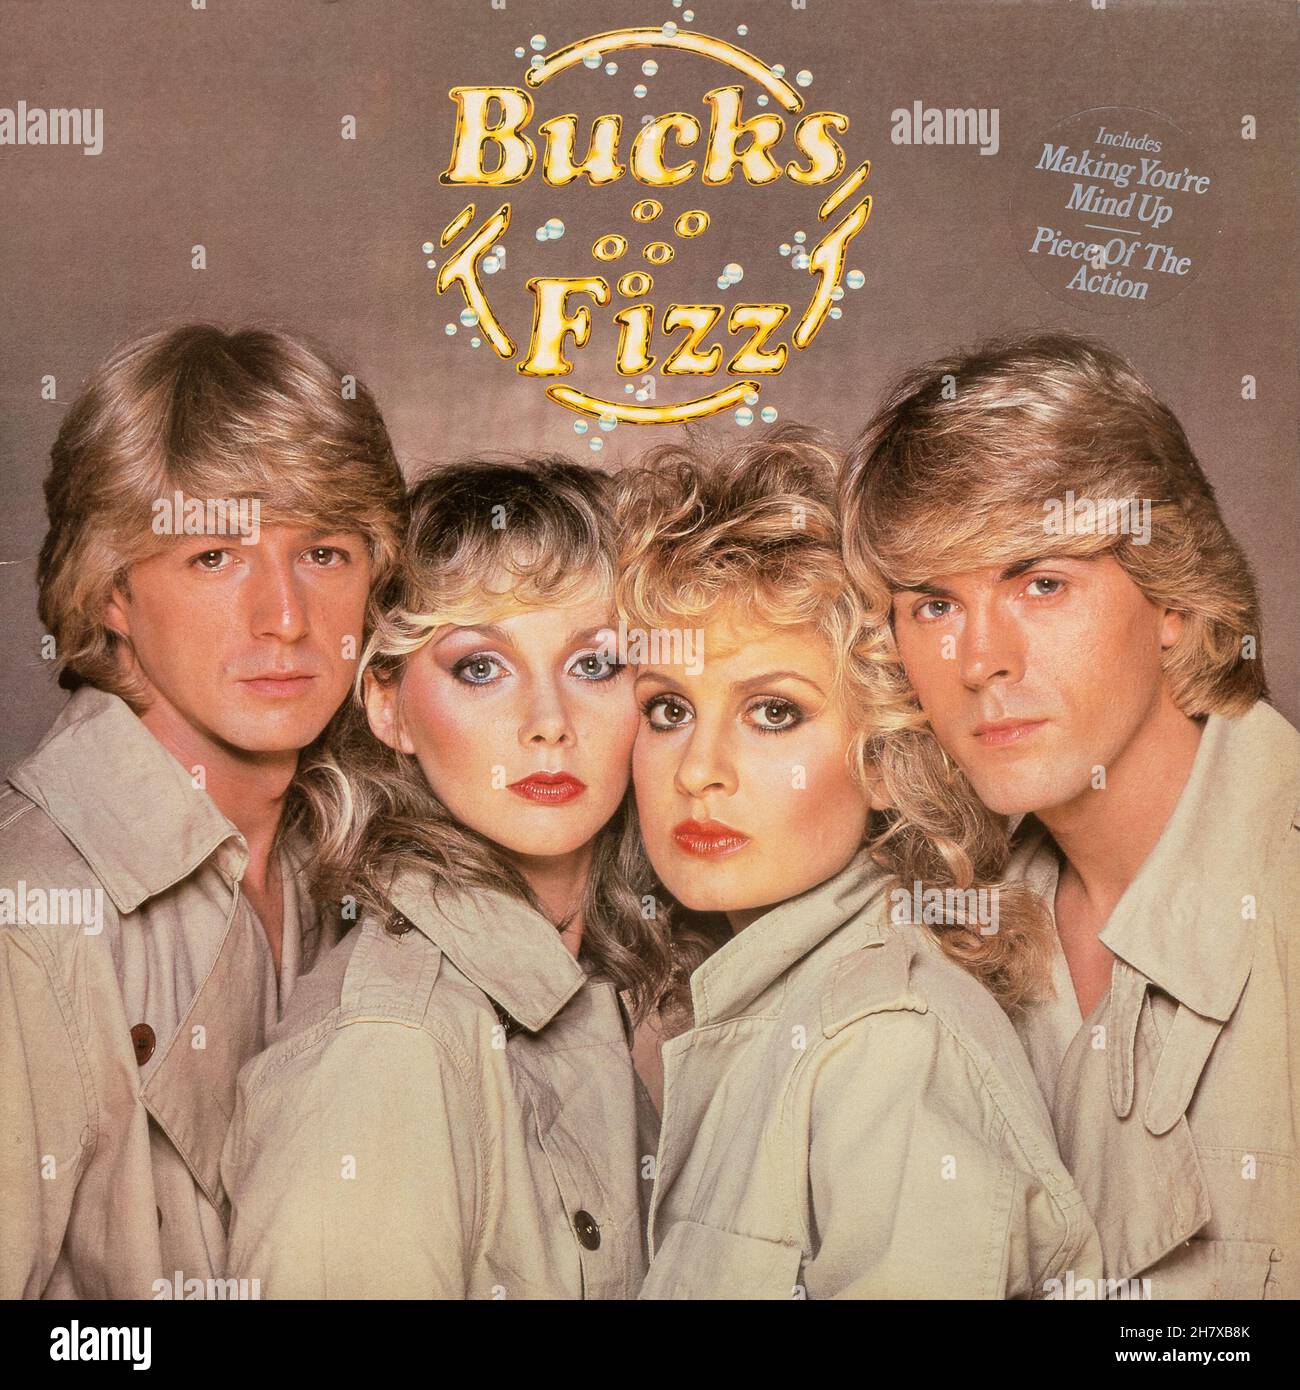 Album di debutto di Bucks Fizz, etichetta discografica 1981 in vinile LP, tra cui la canzone "Making Your Mind Up", vincitrice di Eurovision, del gruppo pop britannico Foto Stock